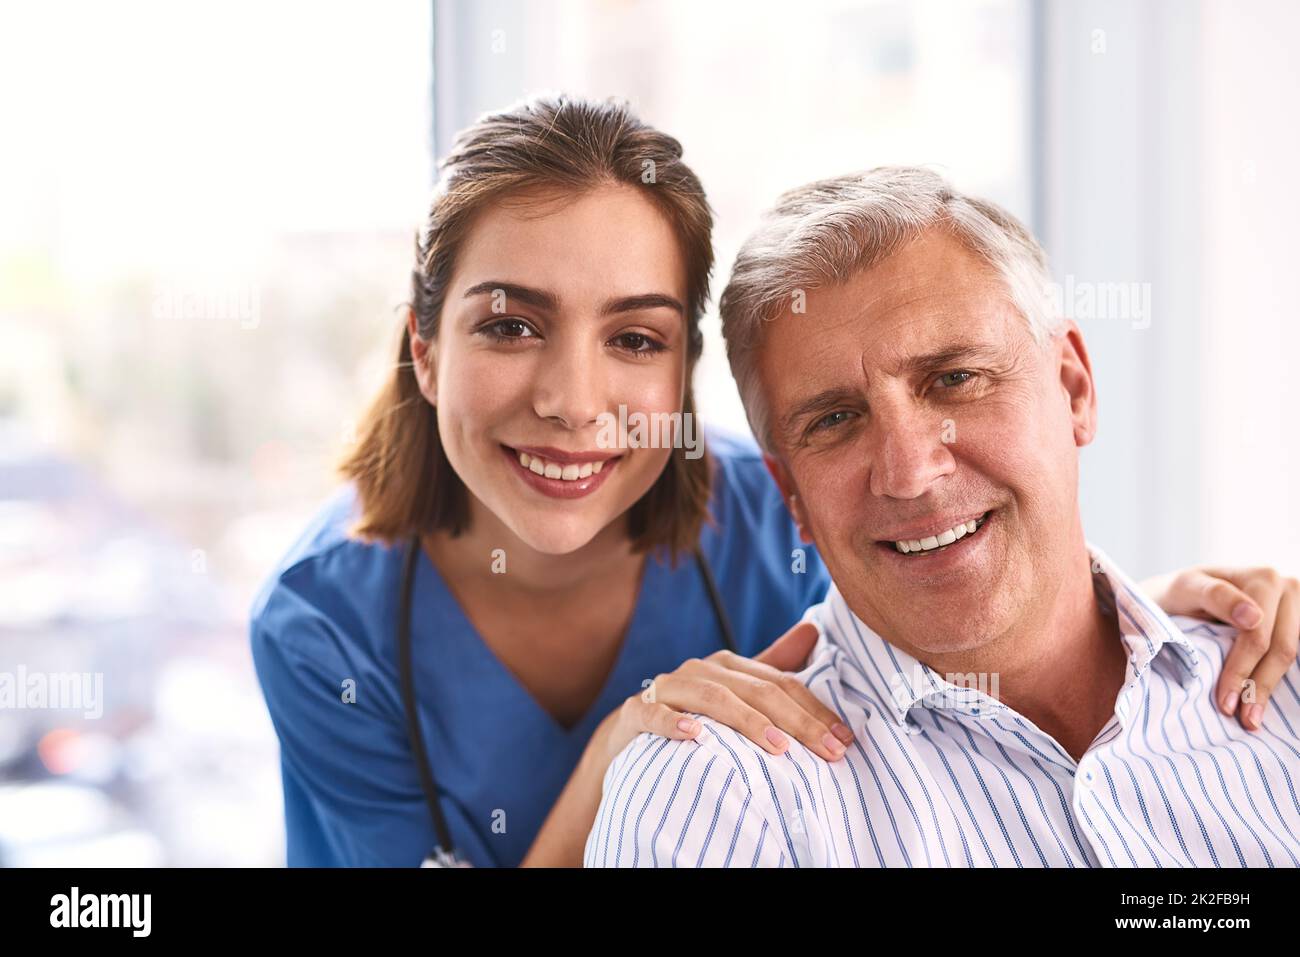 Patienten müssen sich nie mehr Sorgen machen. Porträt eines fröhlichen jungen Arztes und eines reifen männlichen Patienten, der lächelt und in die Kamera schaut. Stockfoto